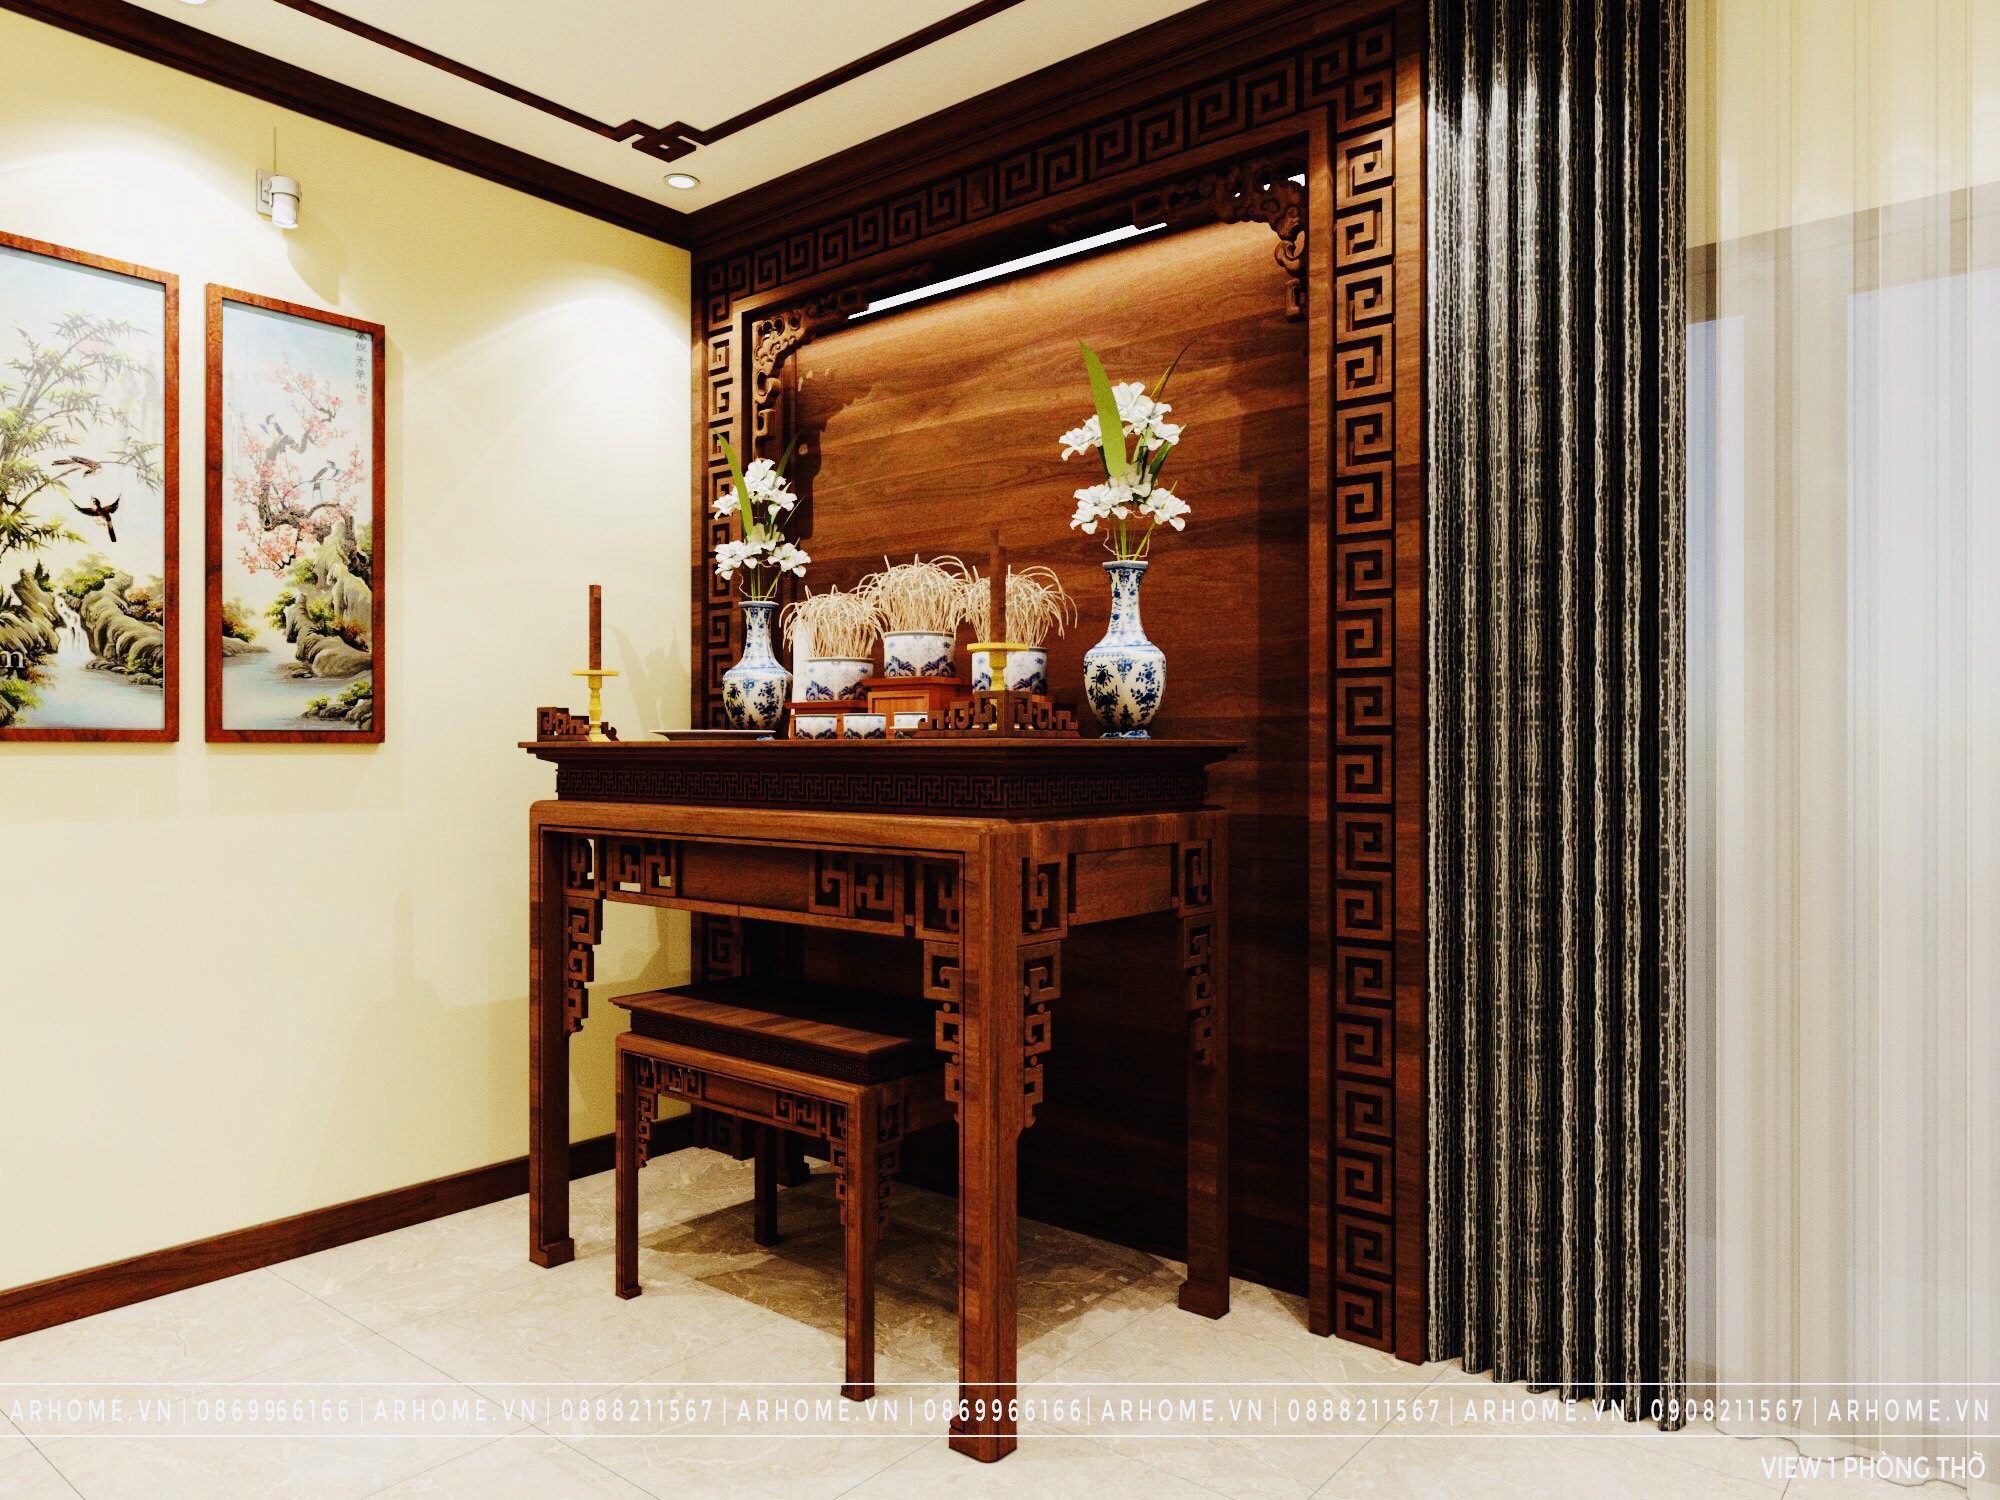 Thiết kế nội thất Nhà tại Hà Nội Hiện đại & độc đáo trong thiết kế nội thất liền kề Gamuda Garden của chú Hùng 1604312107 7